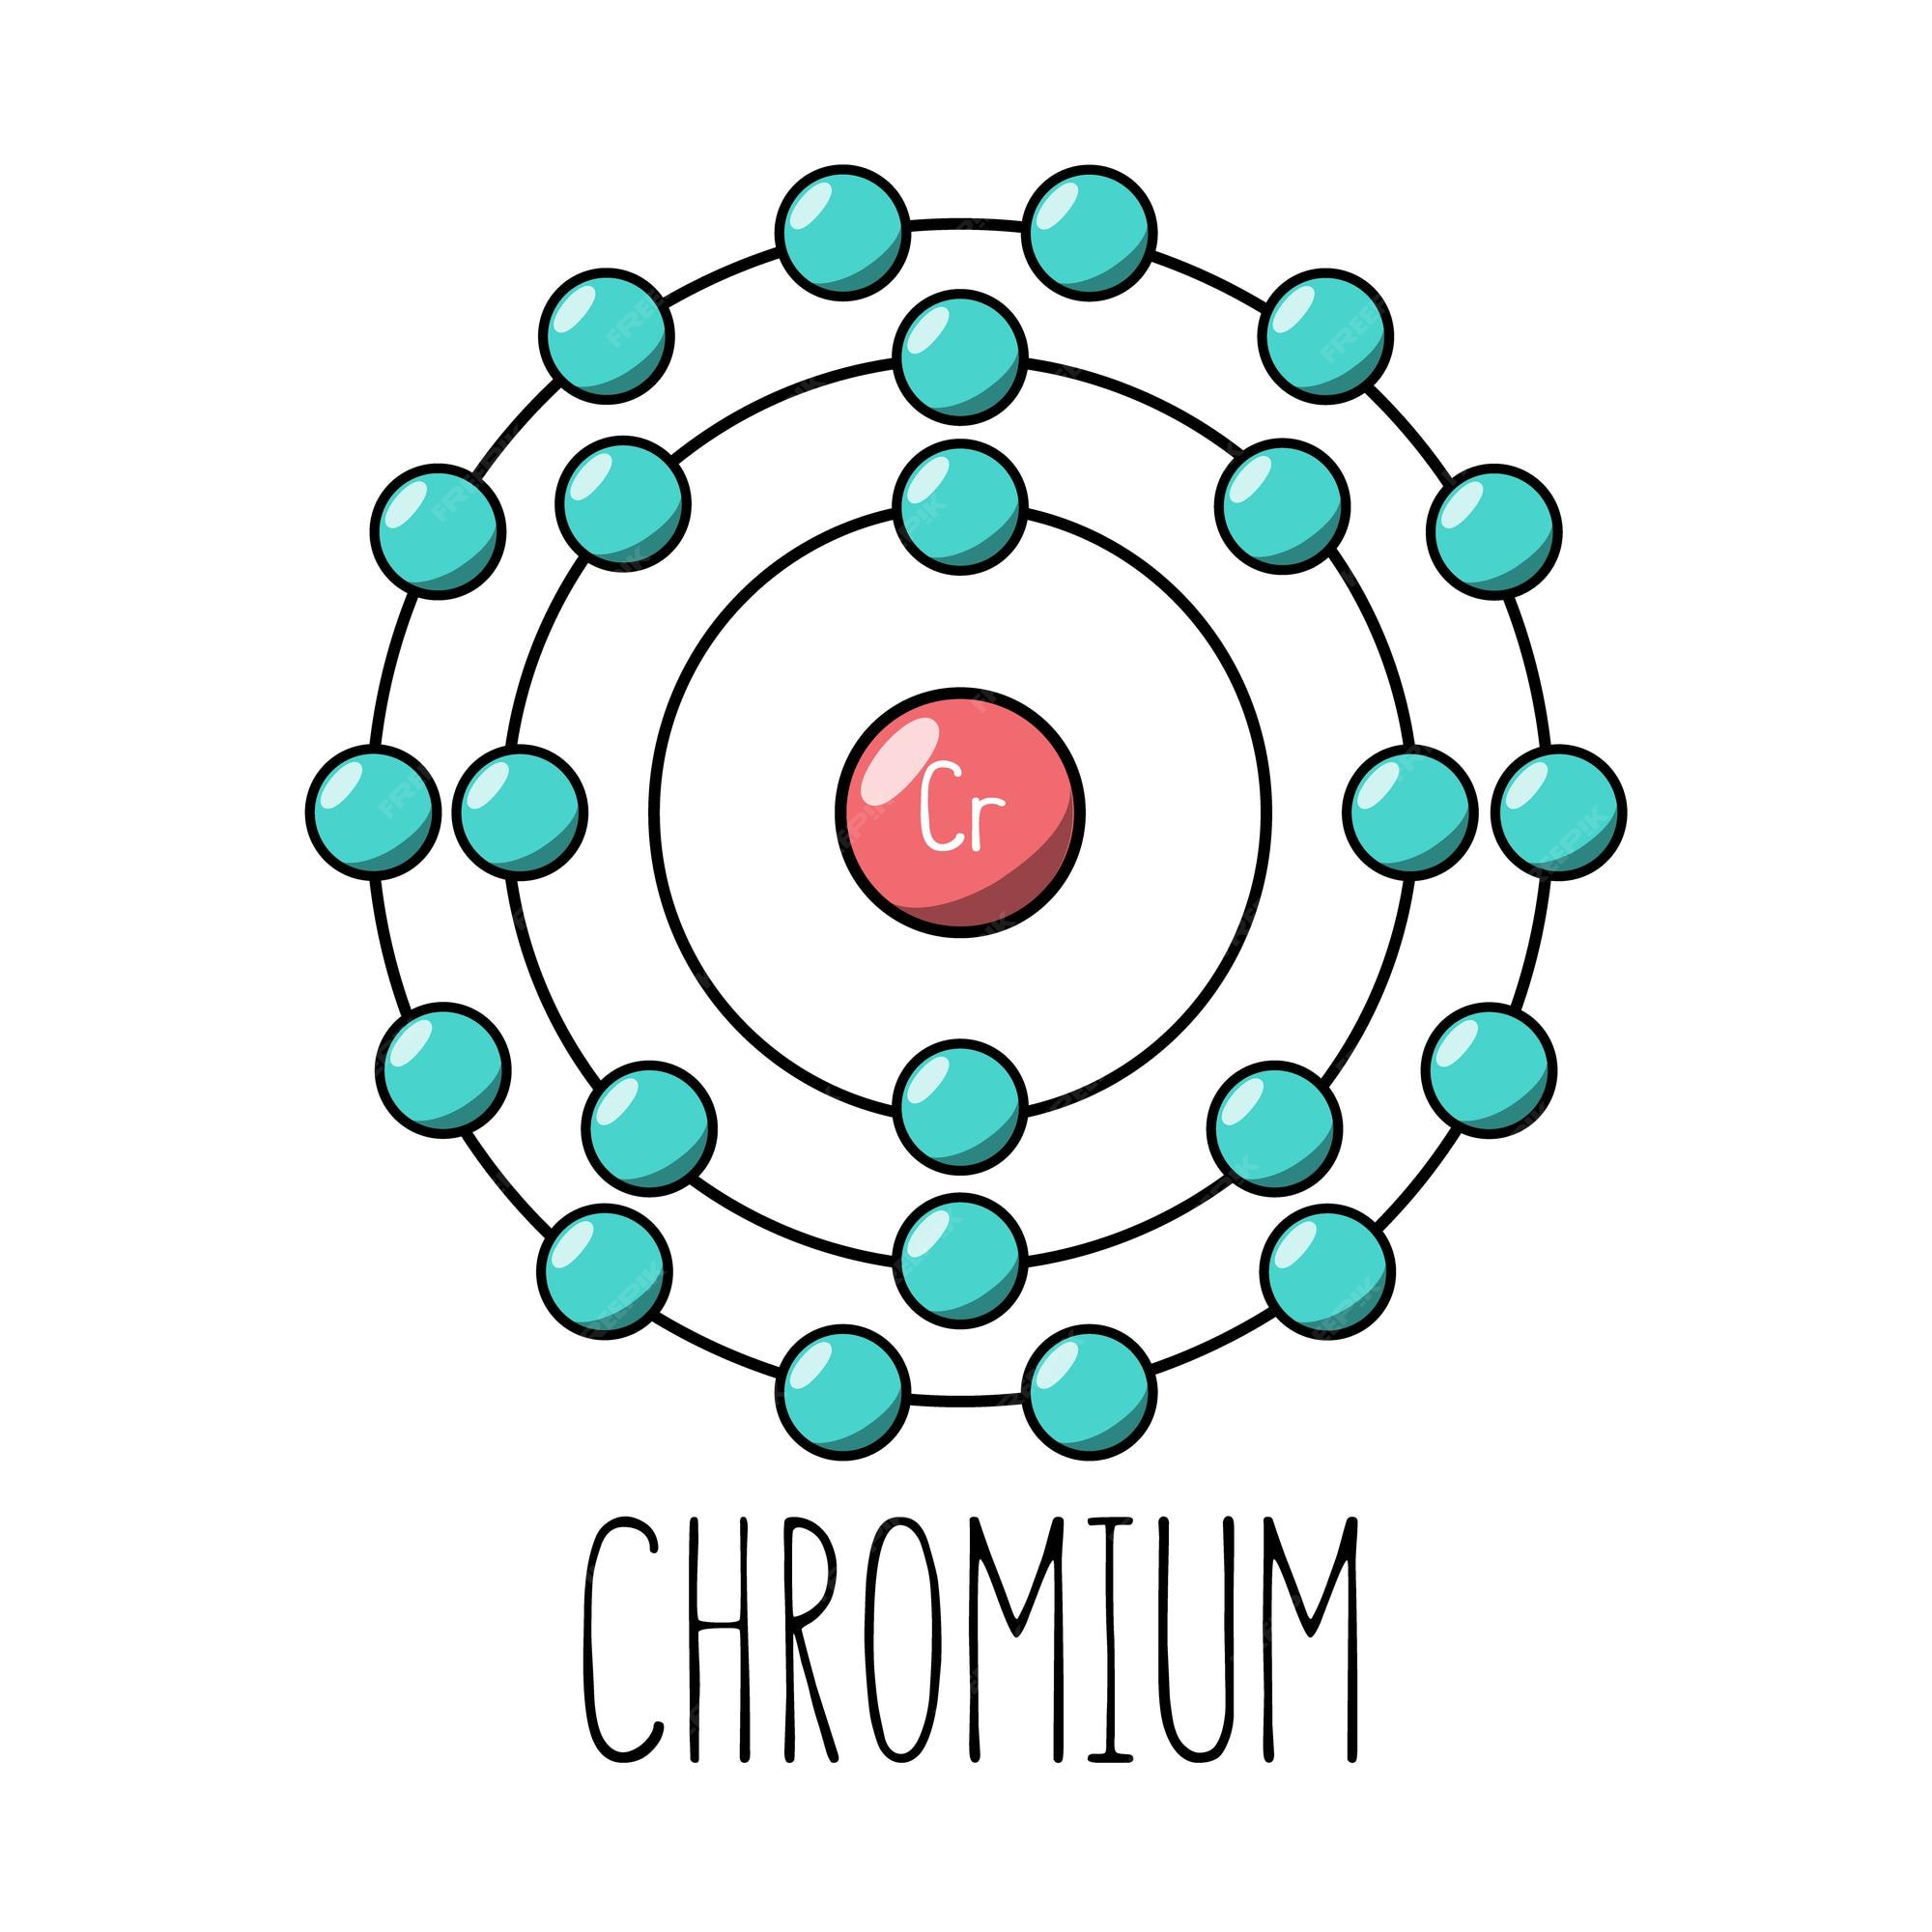 Modelo de bohr del átomo de cromo | Vector Premium